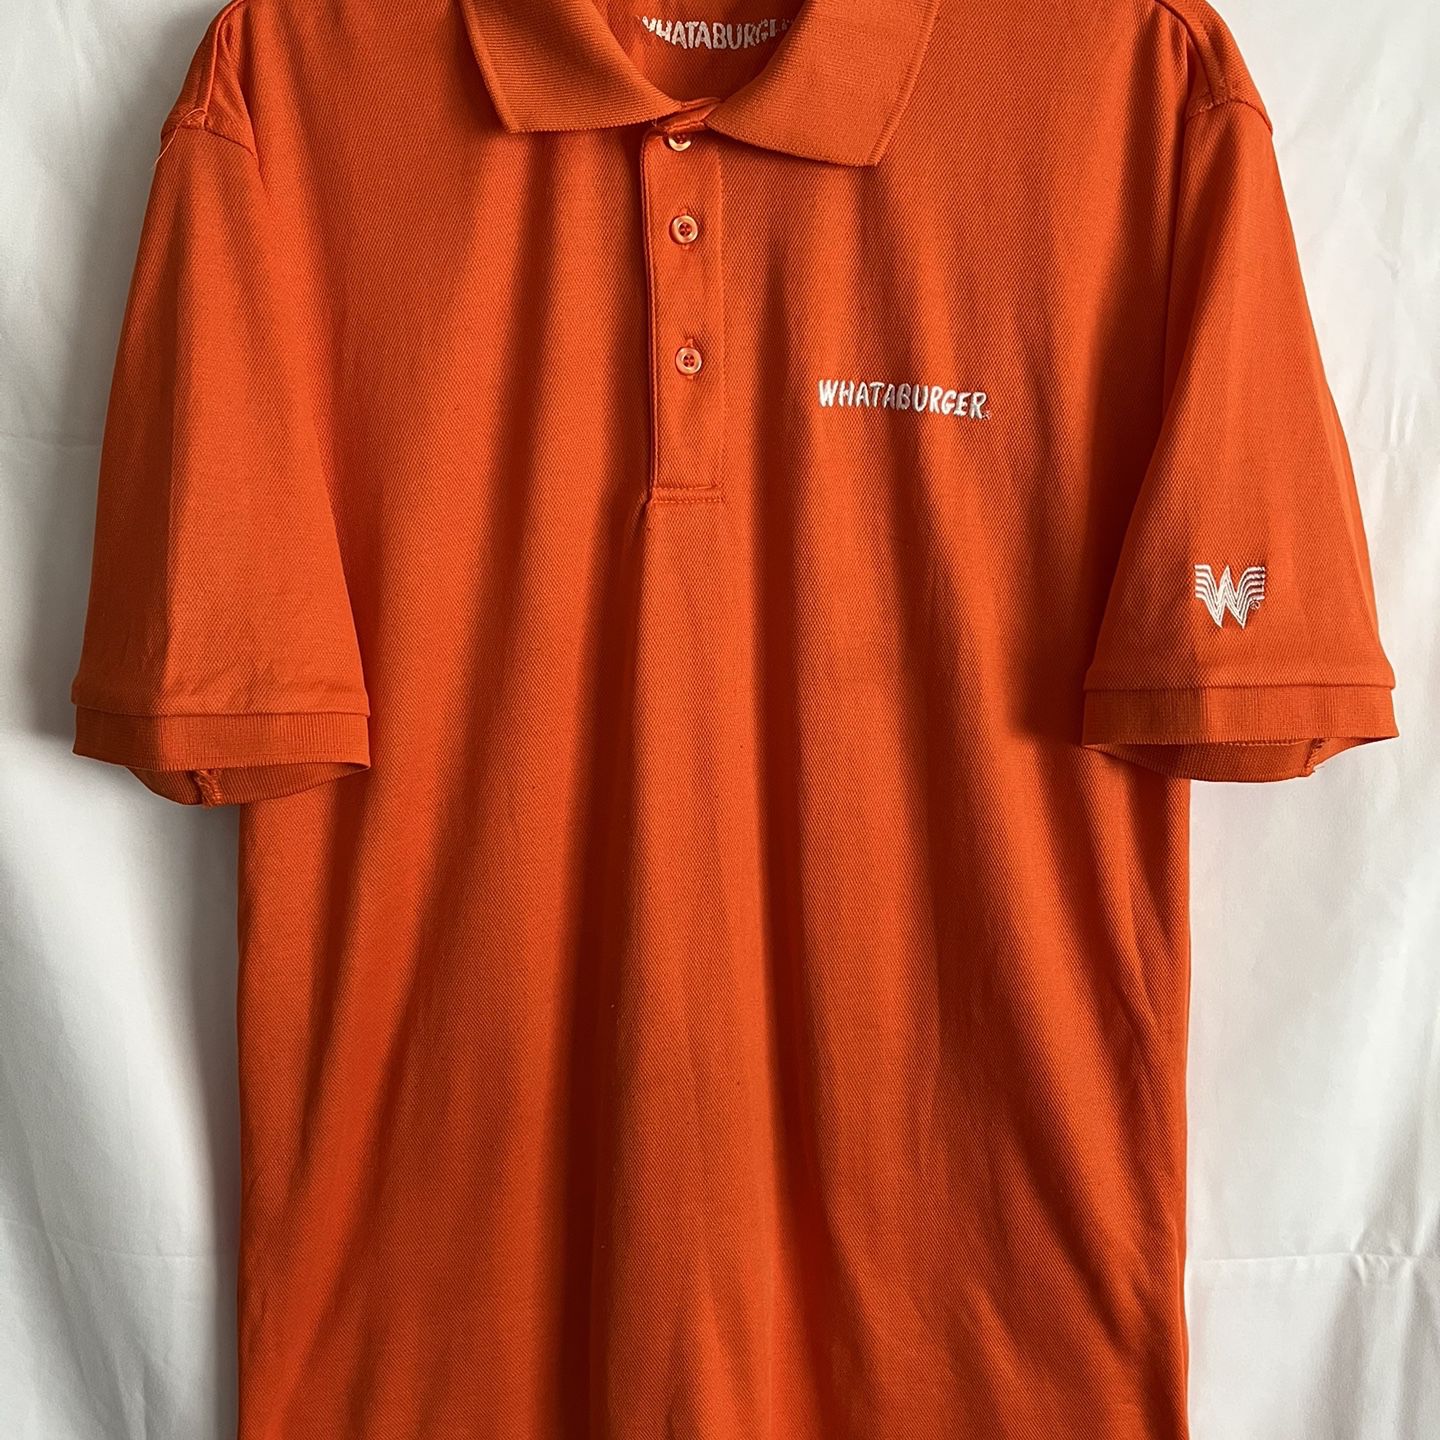 Whataburger Employee Uniform Mens Size Large Striped Orange Polo Work Shirt